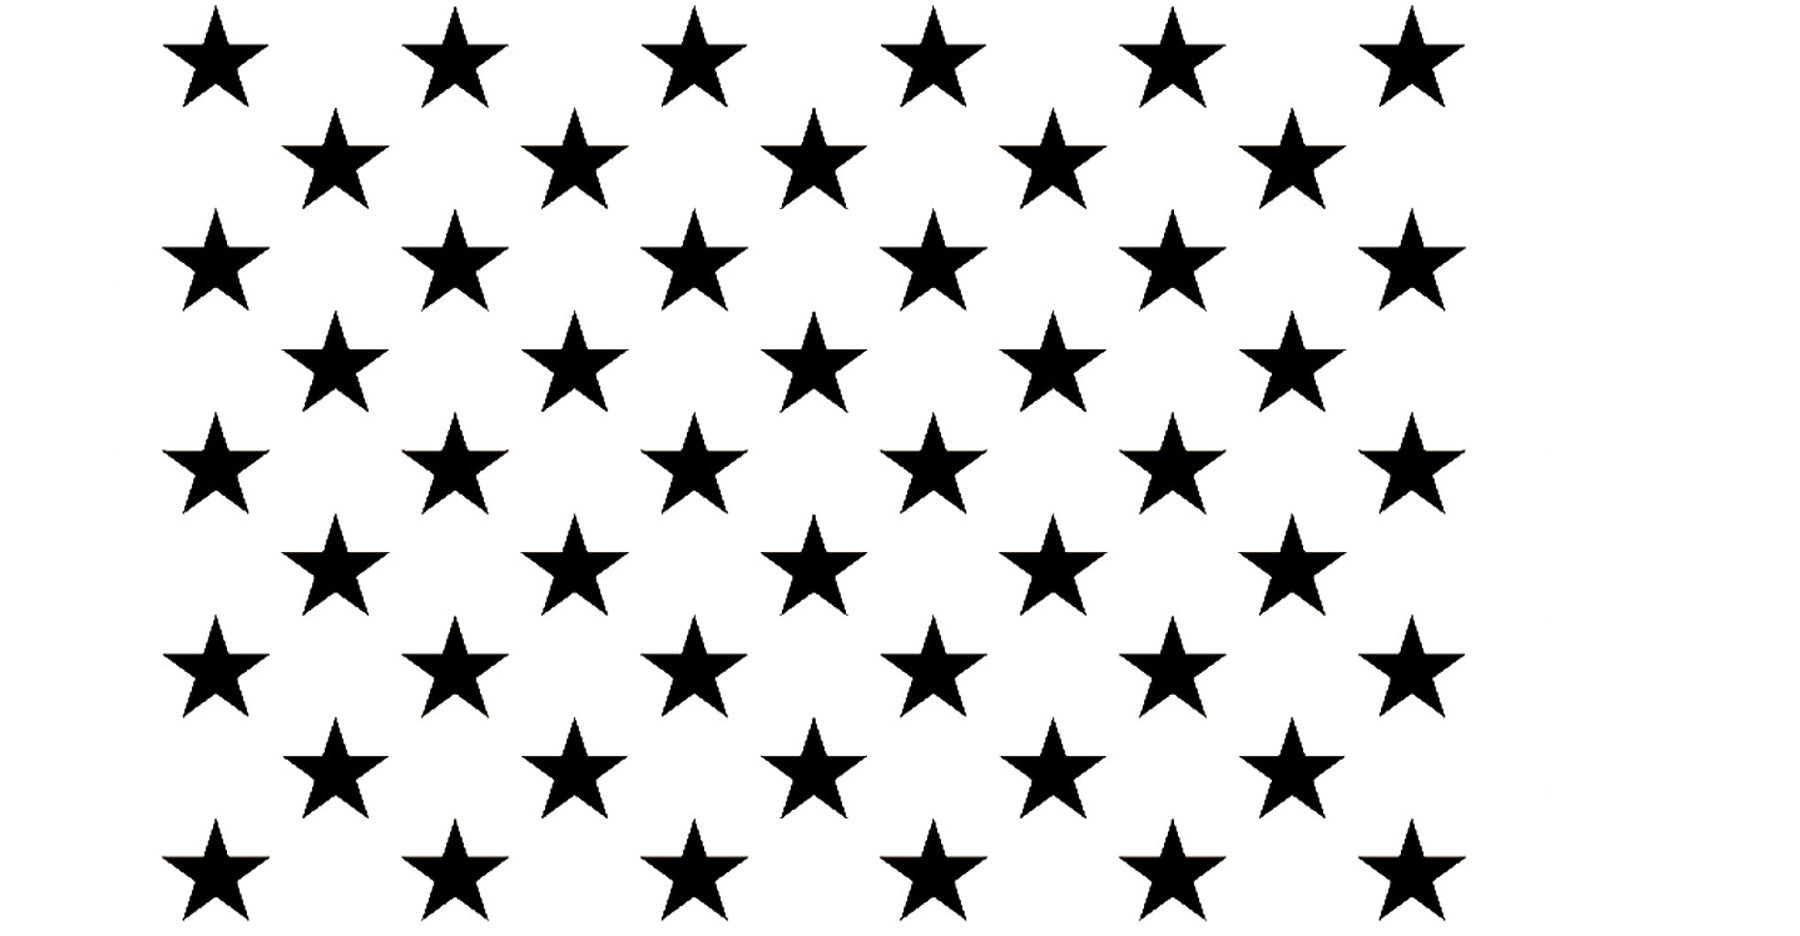 50 stars stencil - Go Stencil